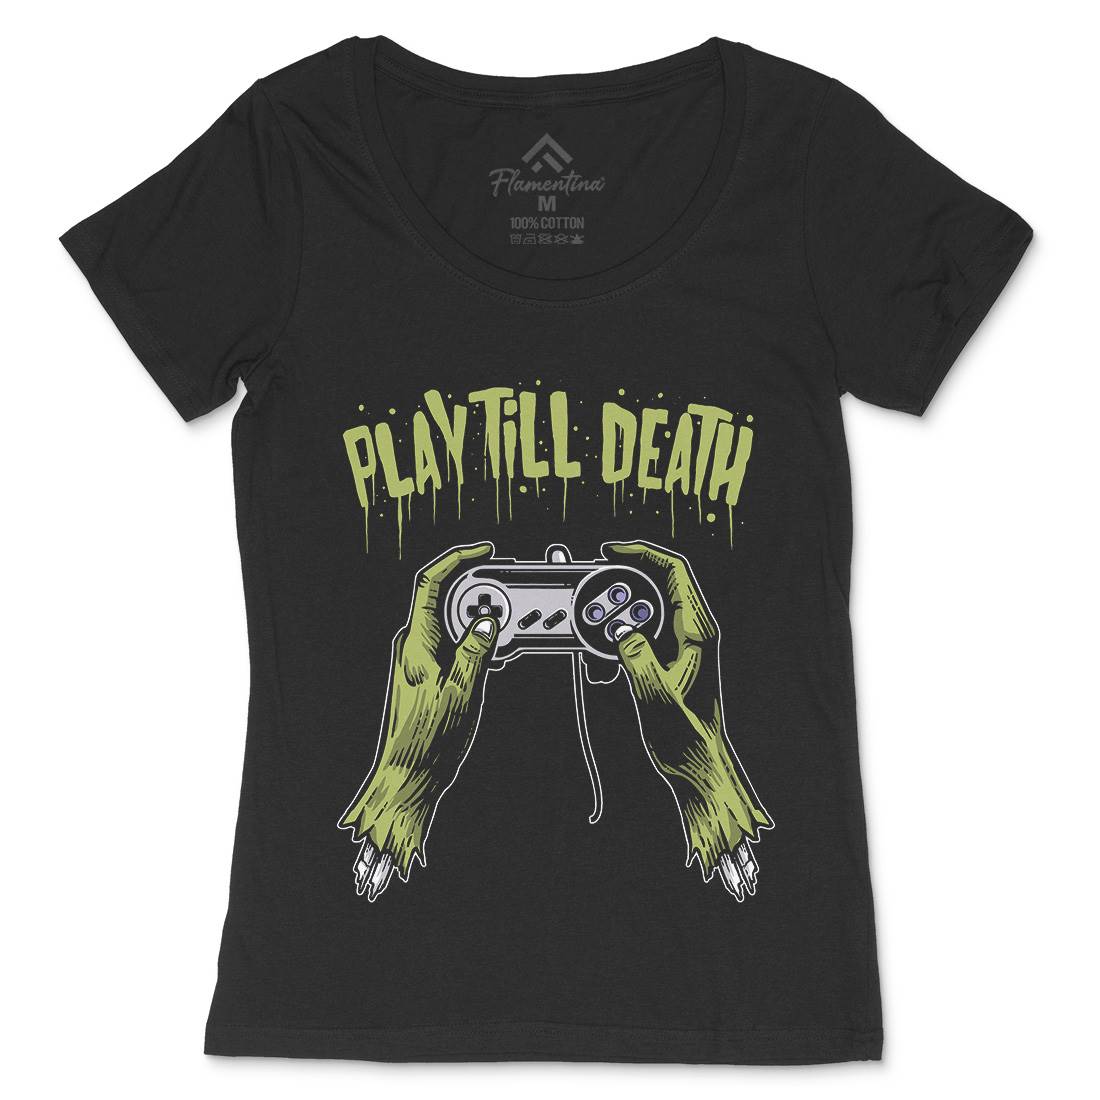 Play Till Death Womens Scoop Neck T-Shirt Geek A561